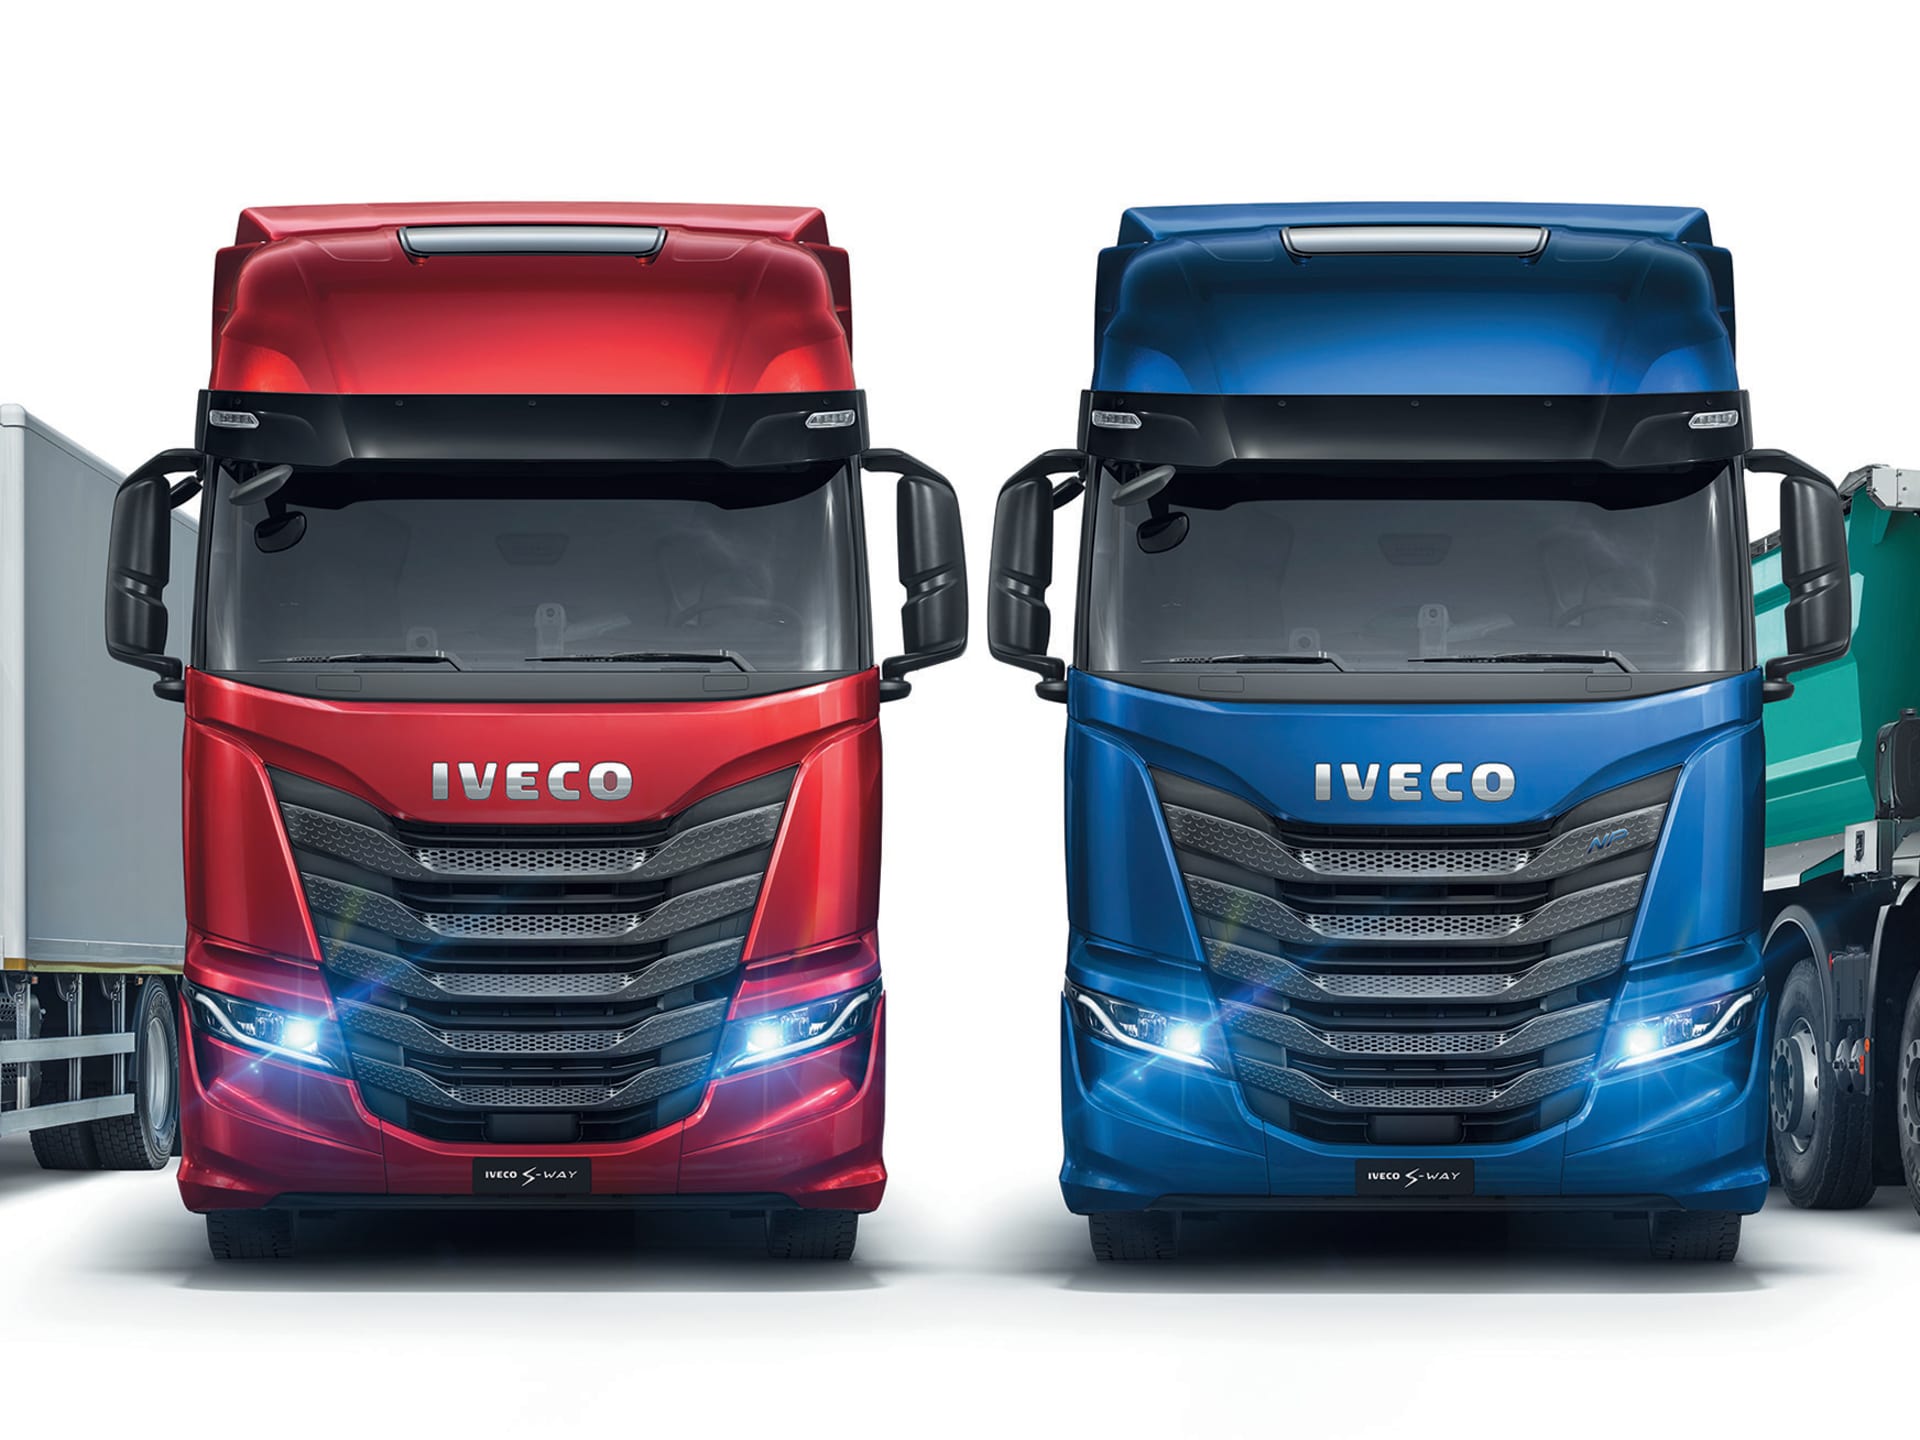 New IVECO Vehicles, Scotland